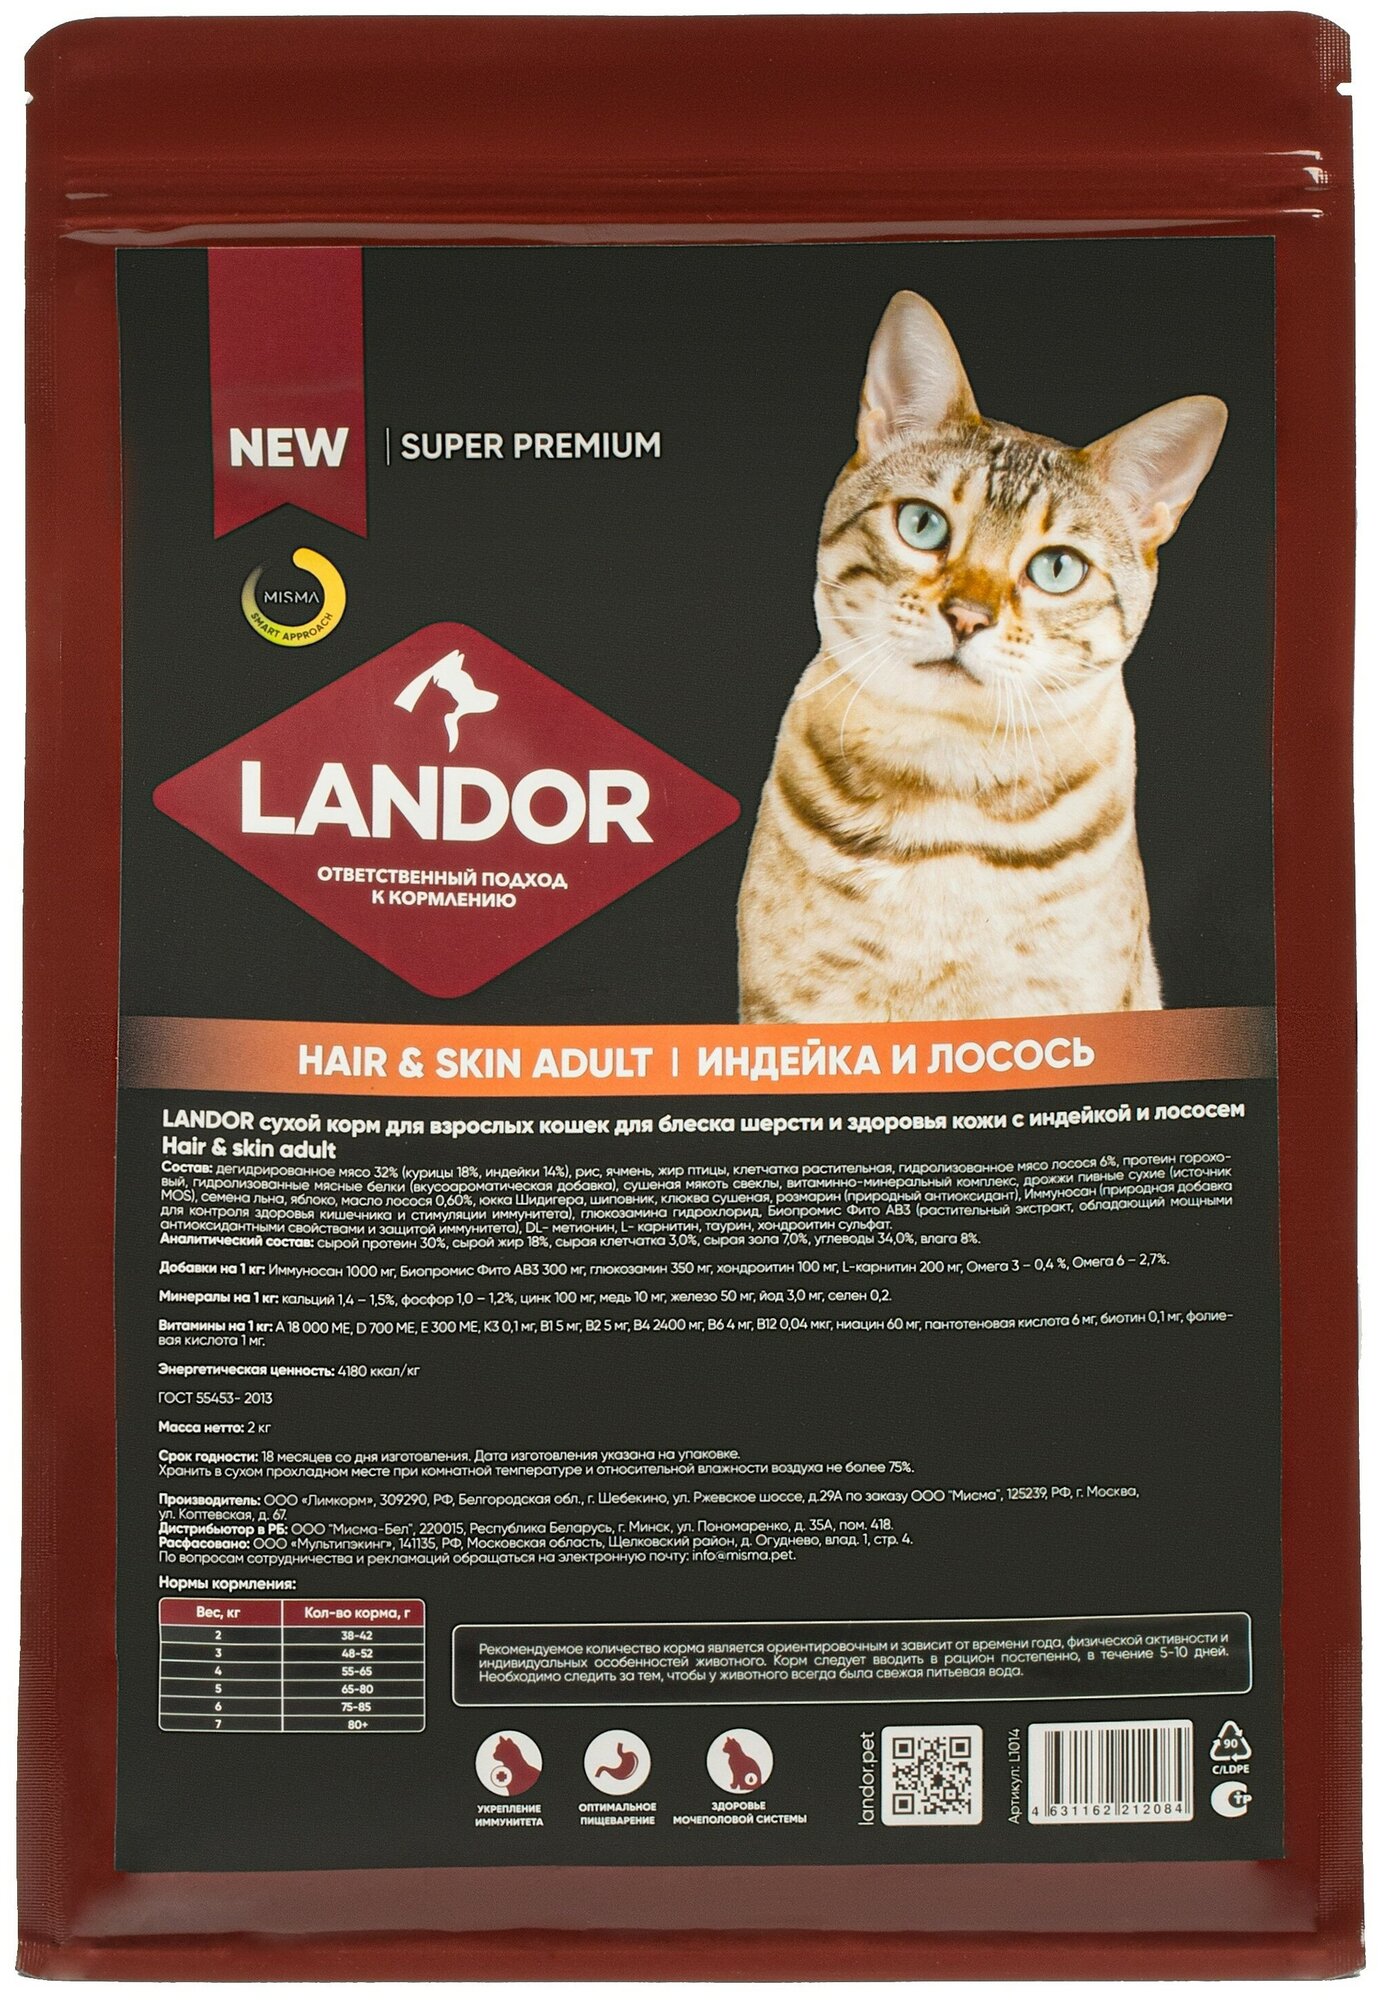 LANDOR сухой корм для взрослых кошек для шерсти и здоровья кожи c индейкой и лососем 2кг